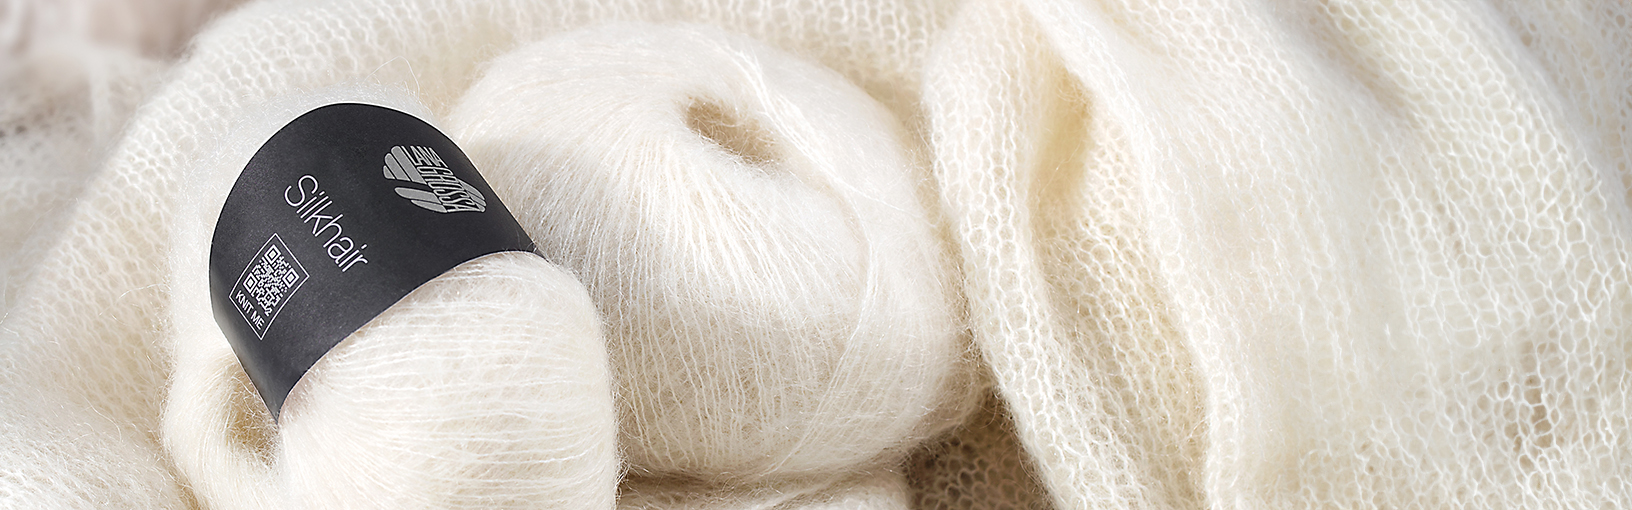 Garn av hög kvalitet för stickning, virkning och filtning LANA GROSSA<br> ull & garn